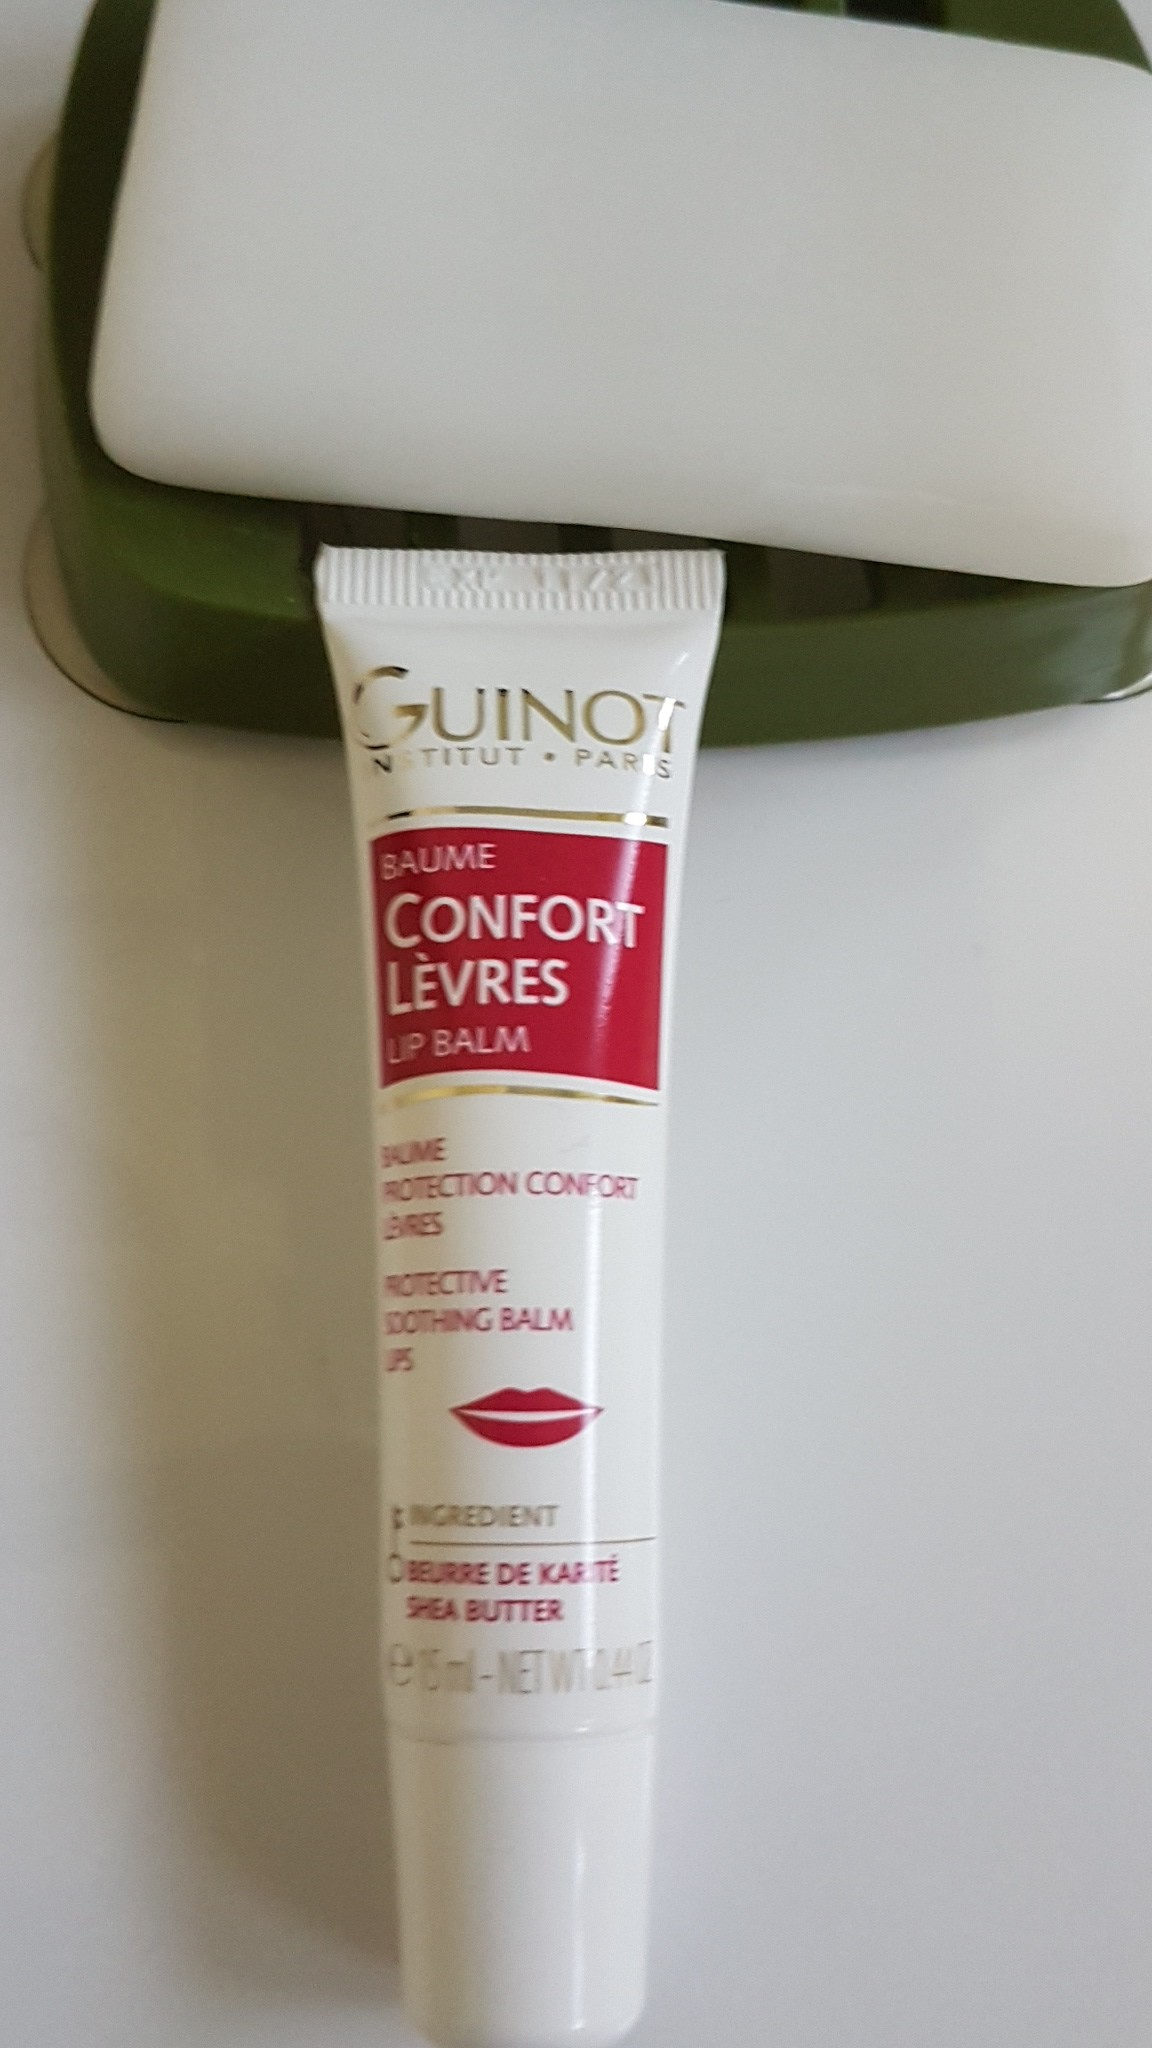 confort lèvres - Product - fr